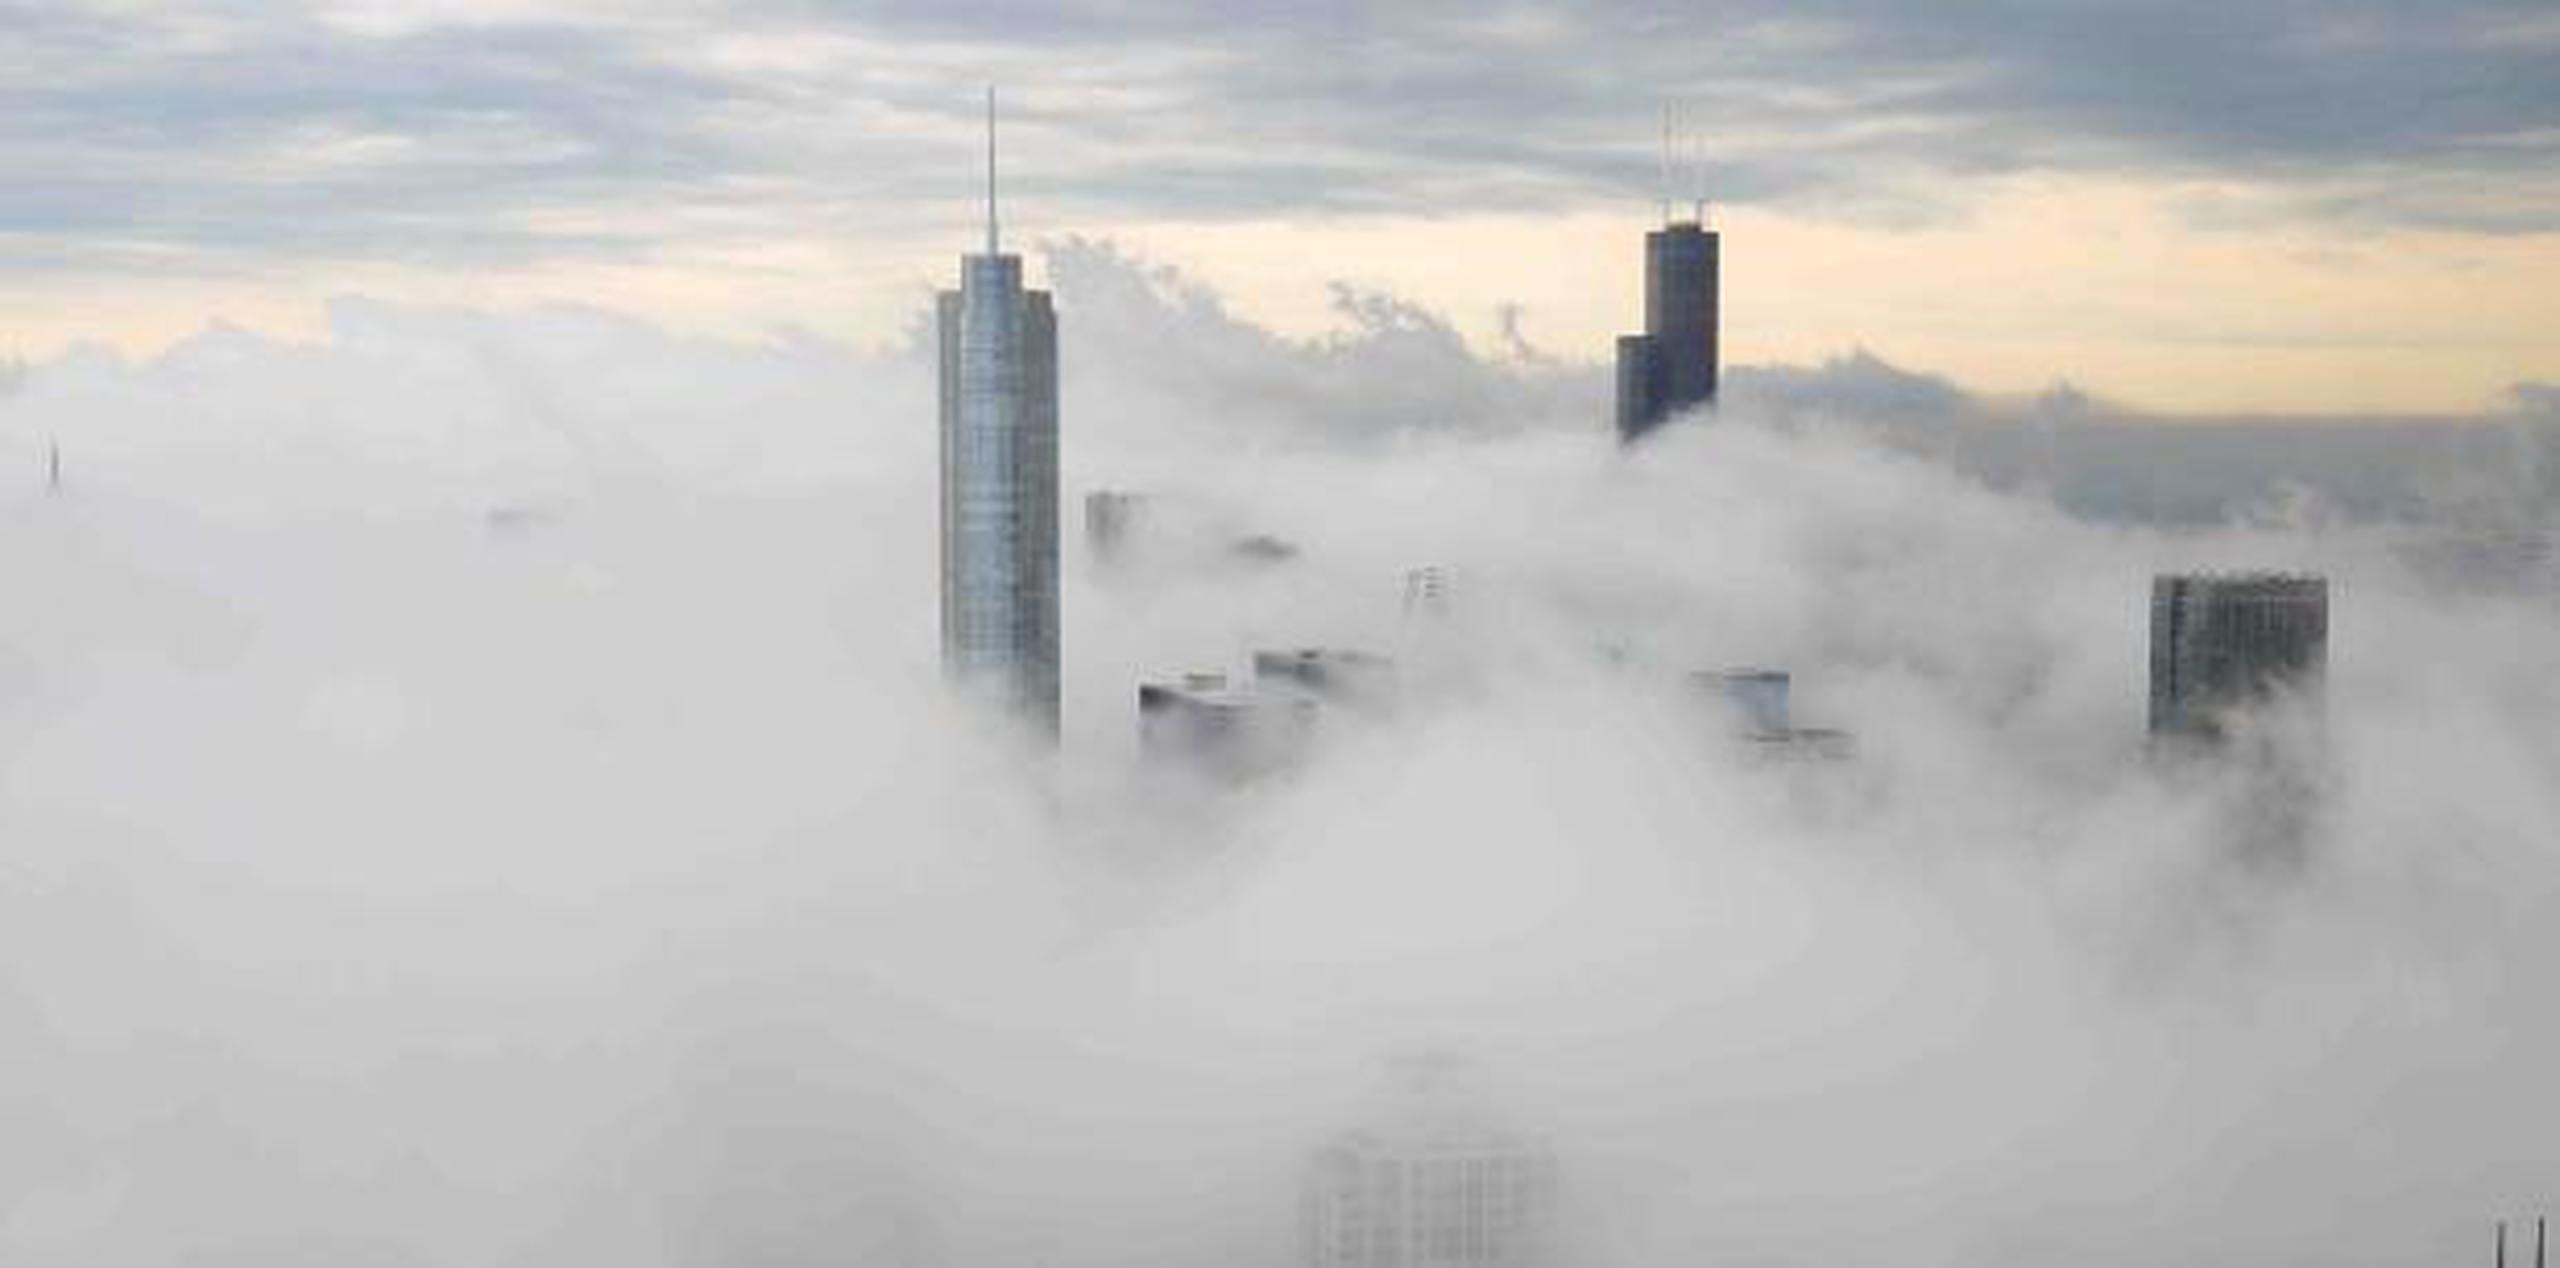 El Servicio Meteorológico Nacional dijo que una "niebla congelada densa" cayó sobre la ciudad y los suburbios durante la noche. (Shutterstock)